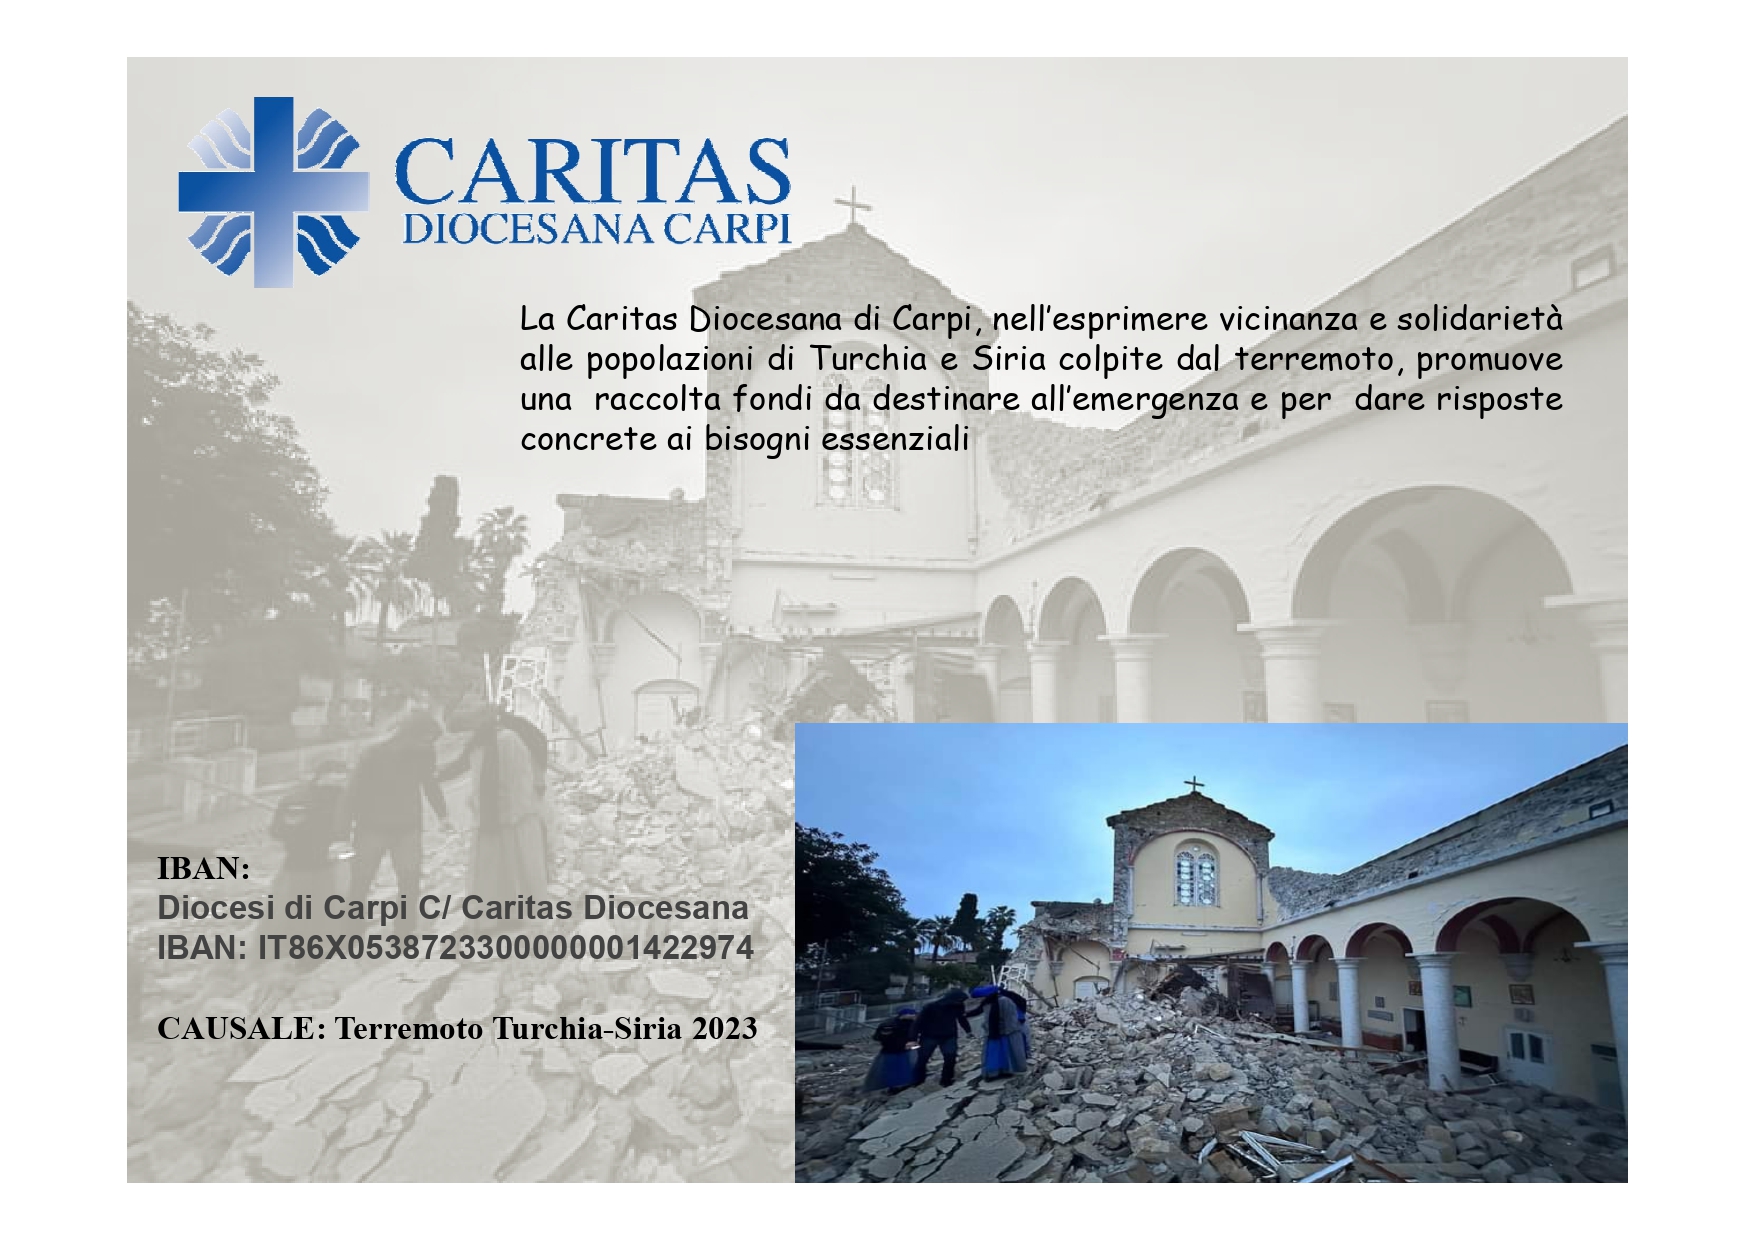 Terremoto Turchia e Siria, attiva la raccolta fondi della Caritas Diocesana di Carpi